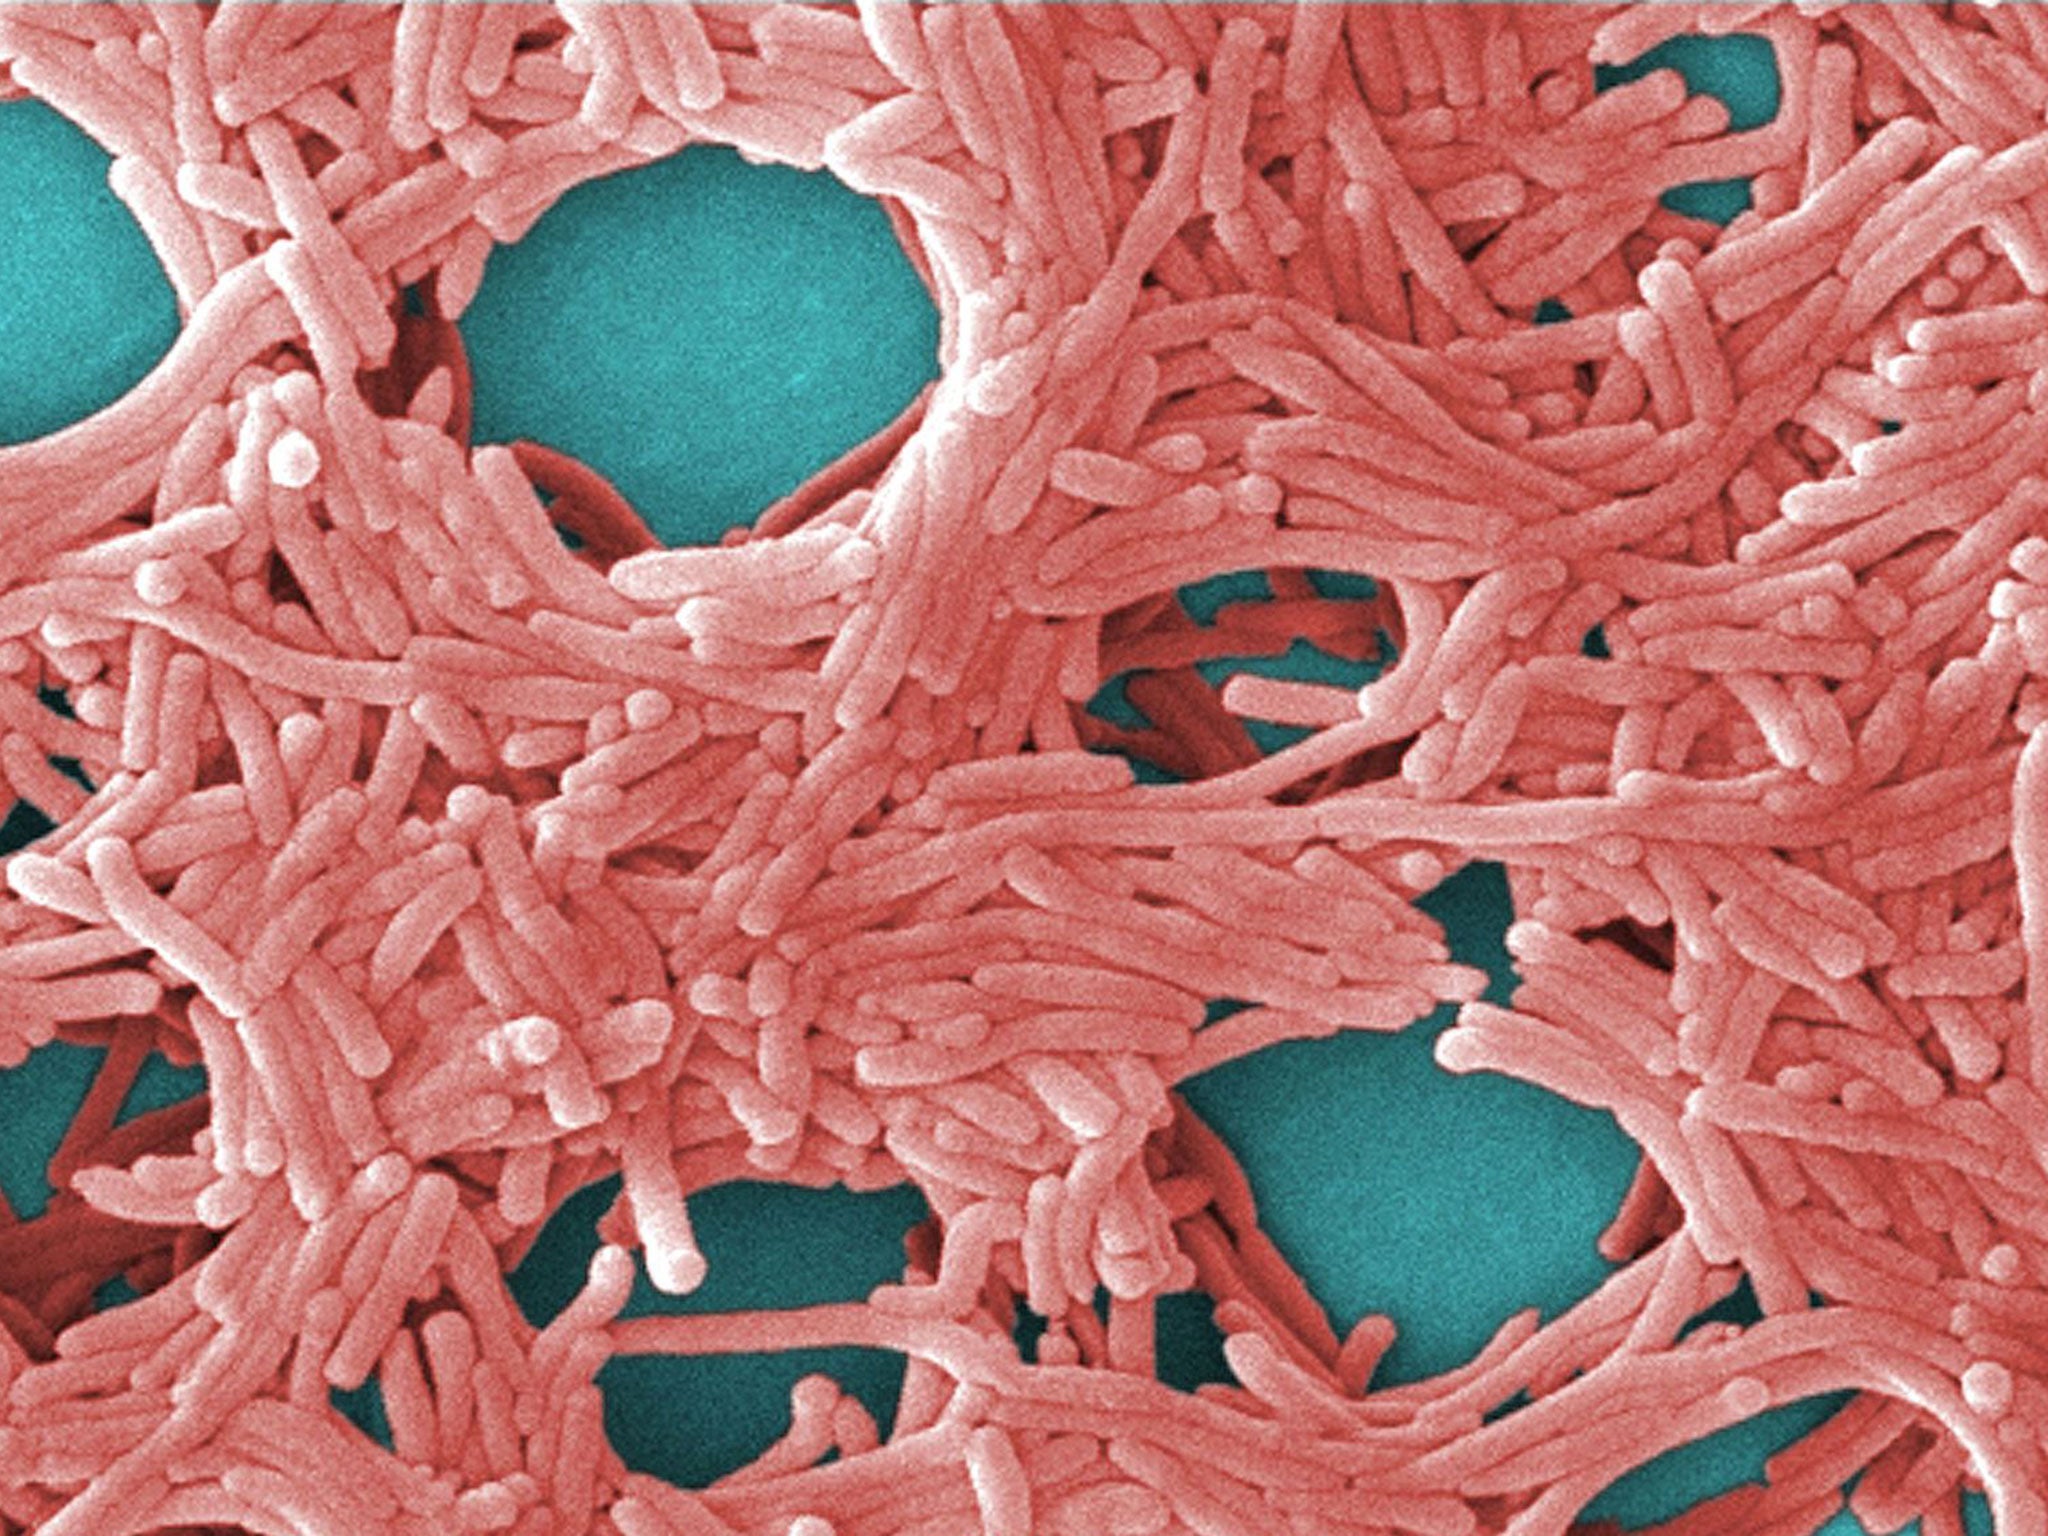 Legionella bacteria magnified by 5000 per cent (Image: Public domain)